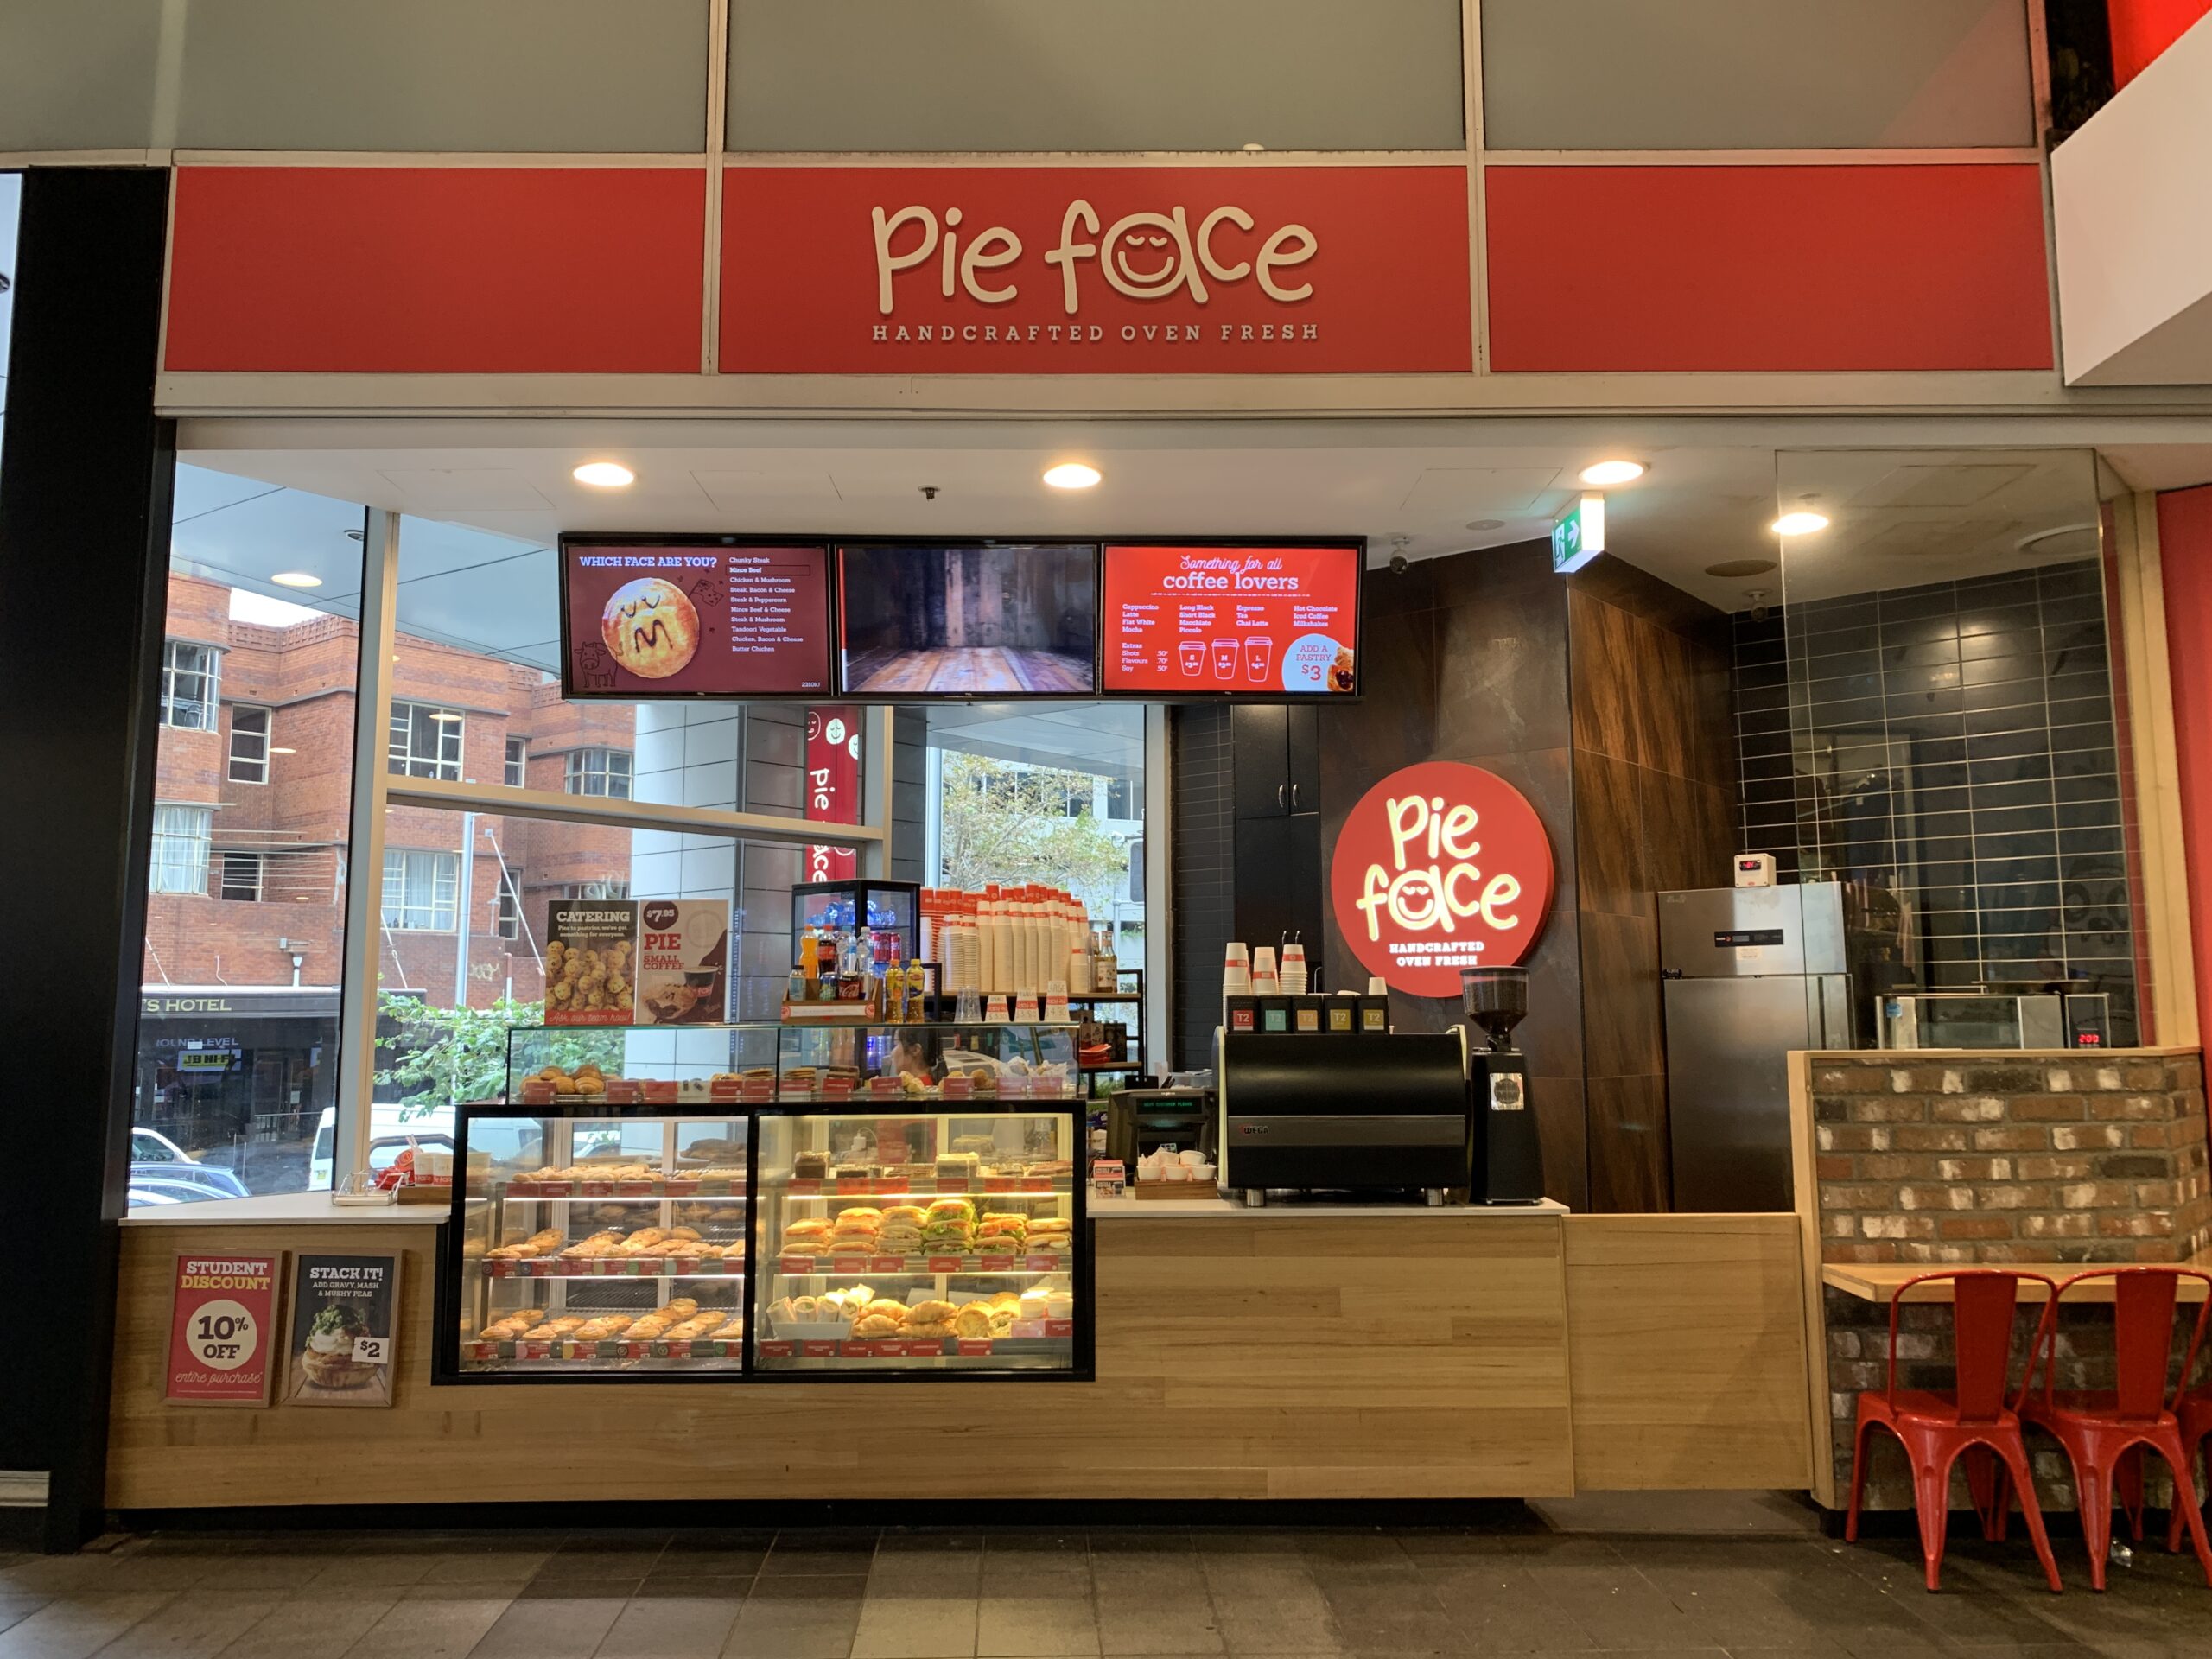 パイ専門店【pie face】シドニー店舗の外観を撮影した写真